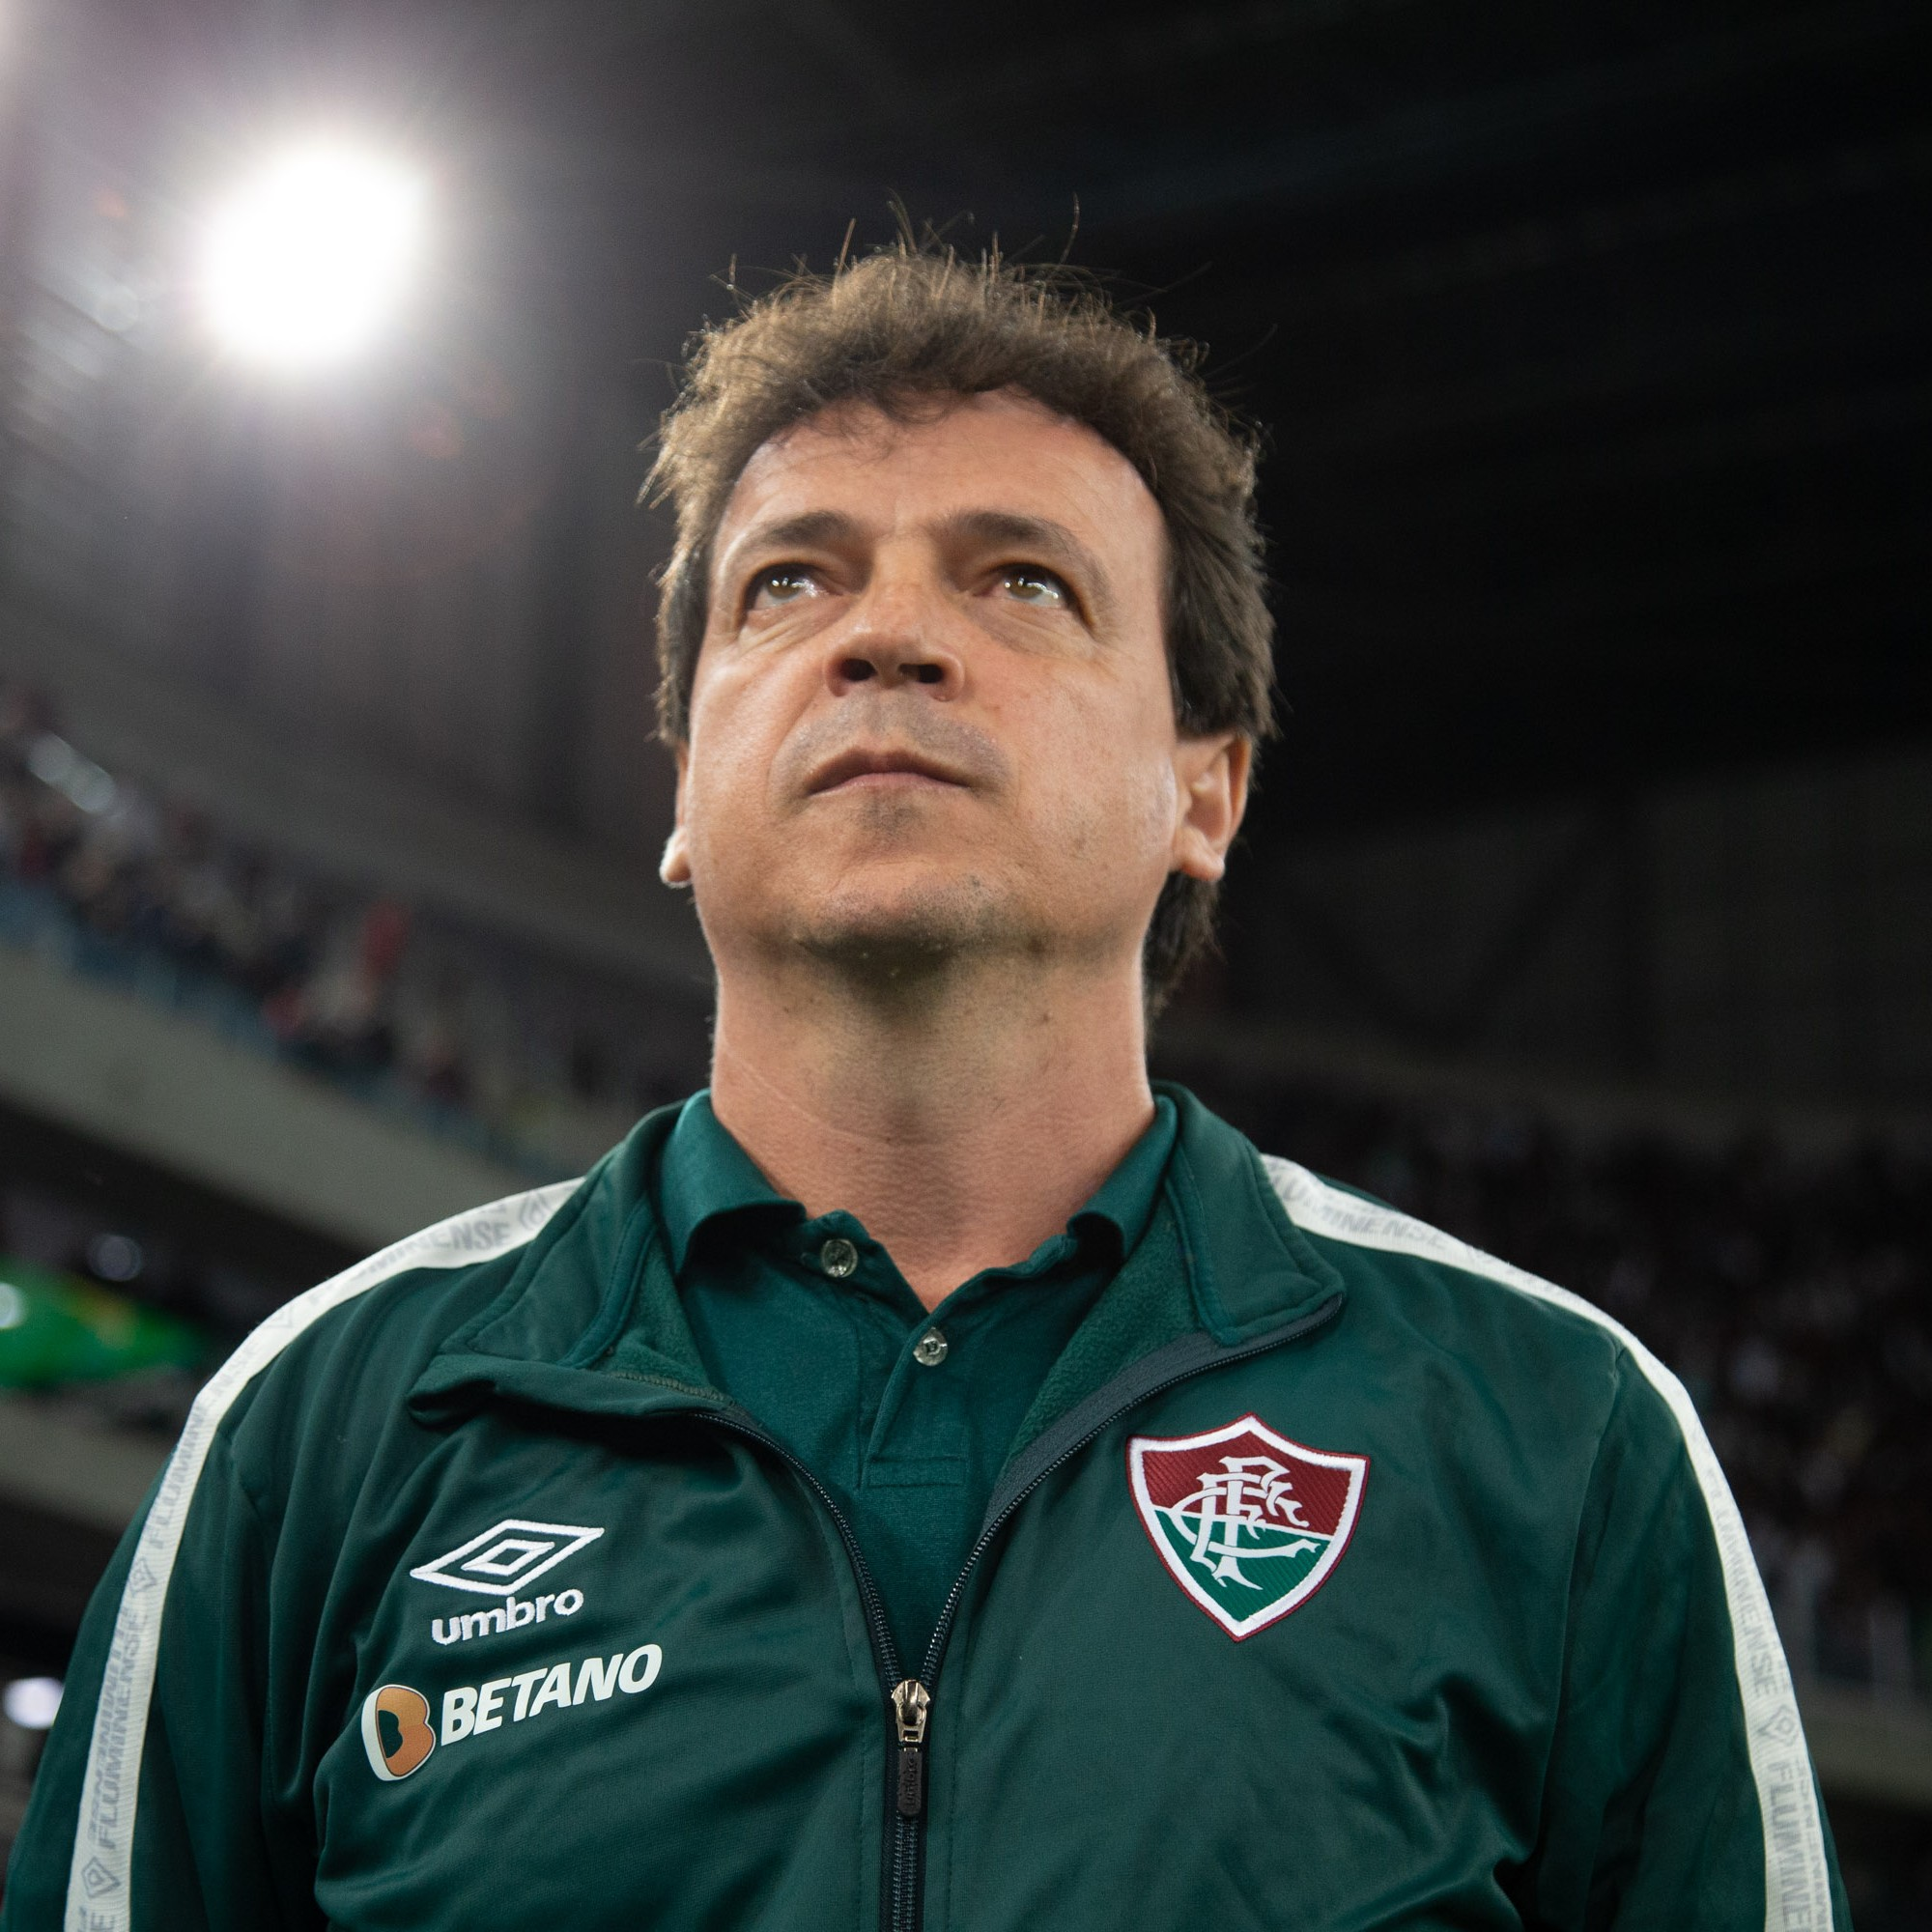 GE Fluminense #240 - Derrota com péssima atuação e a escolha de Diniz: Nathan era melhor opção sem Nonato?